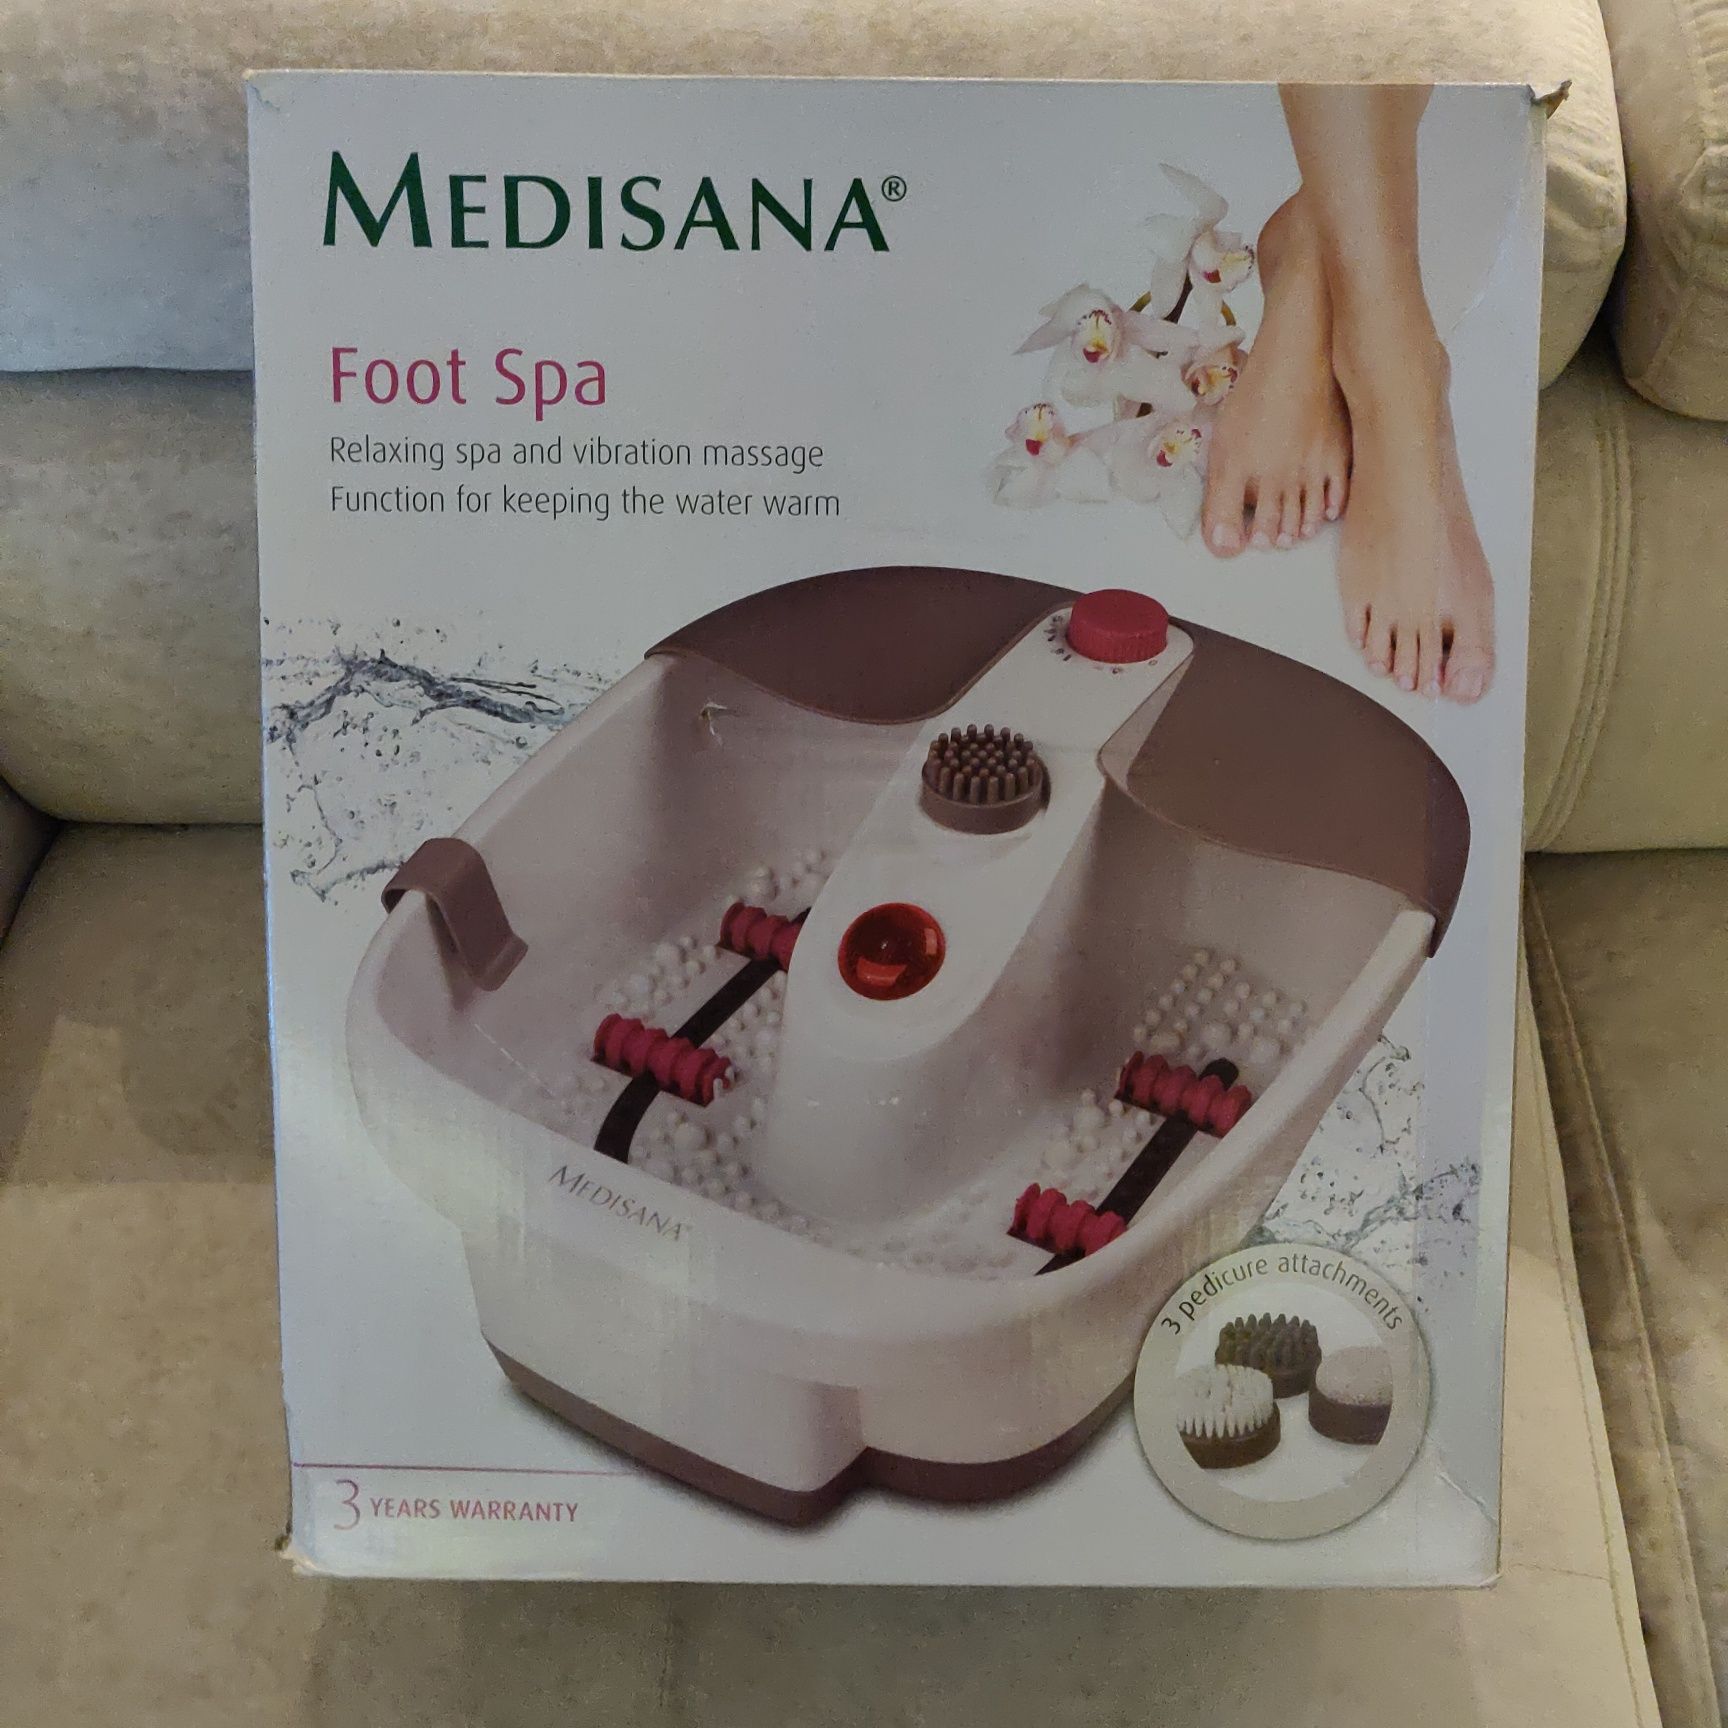 Medisana foot spa